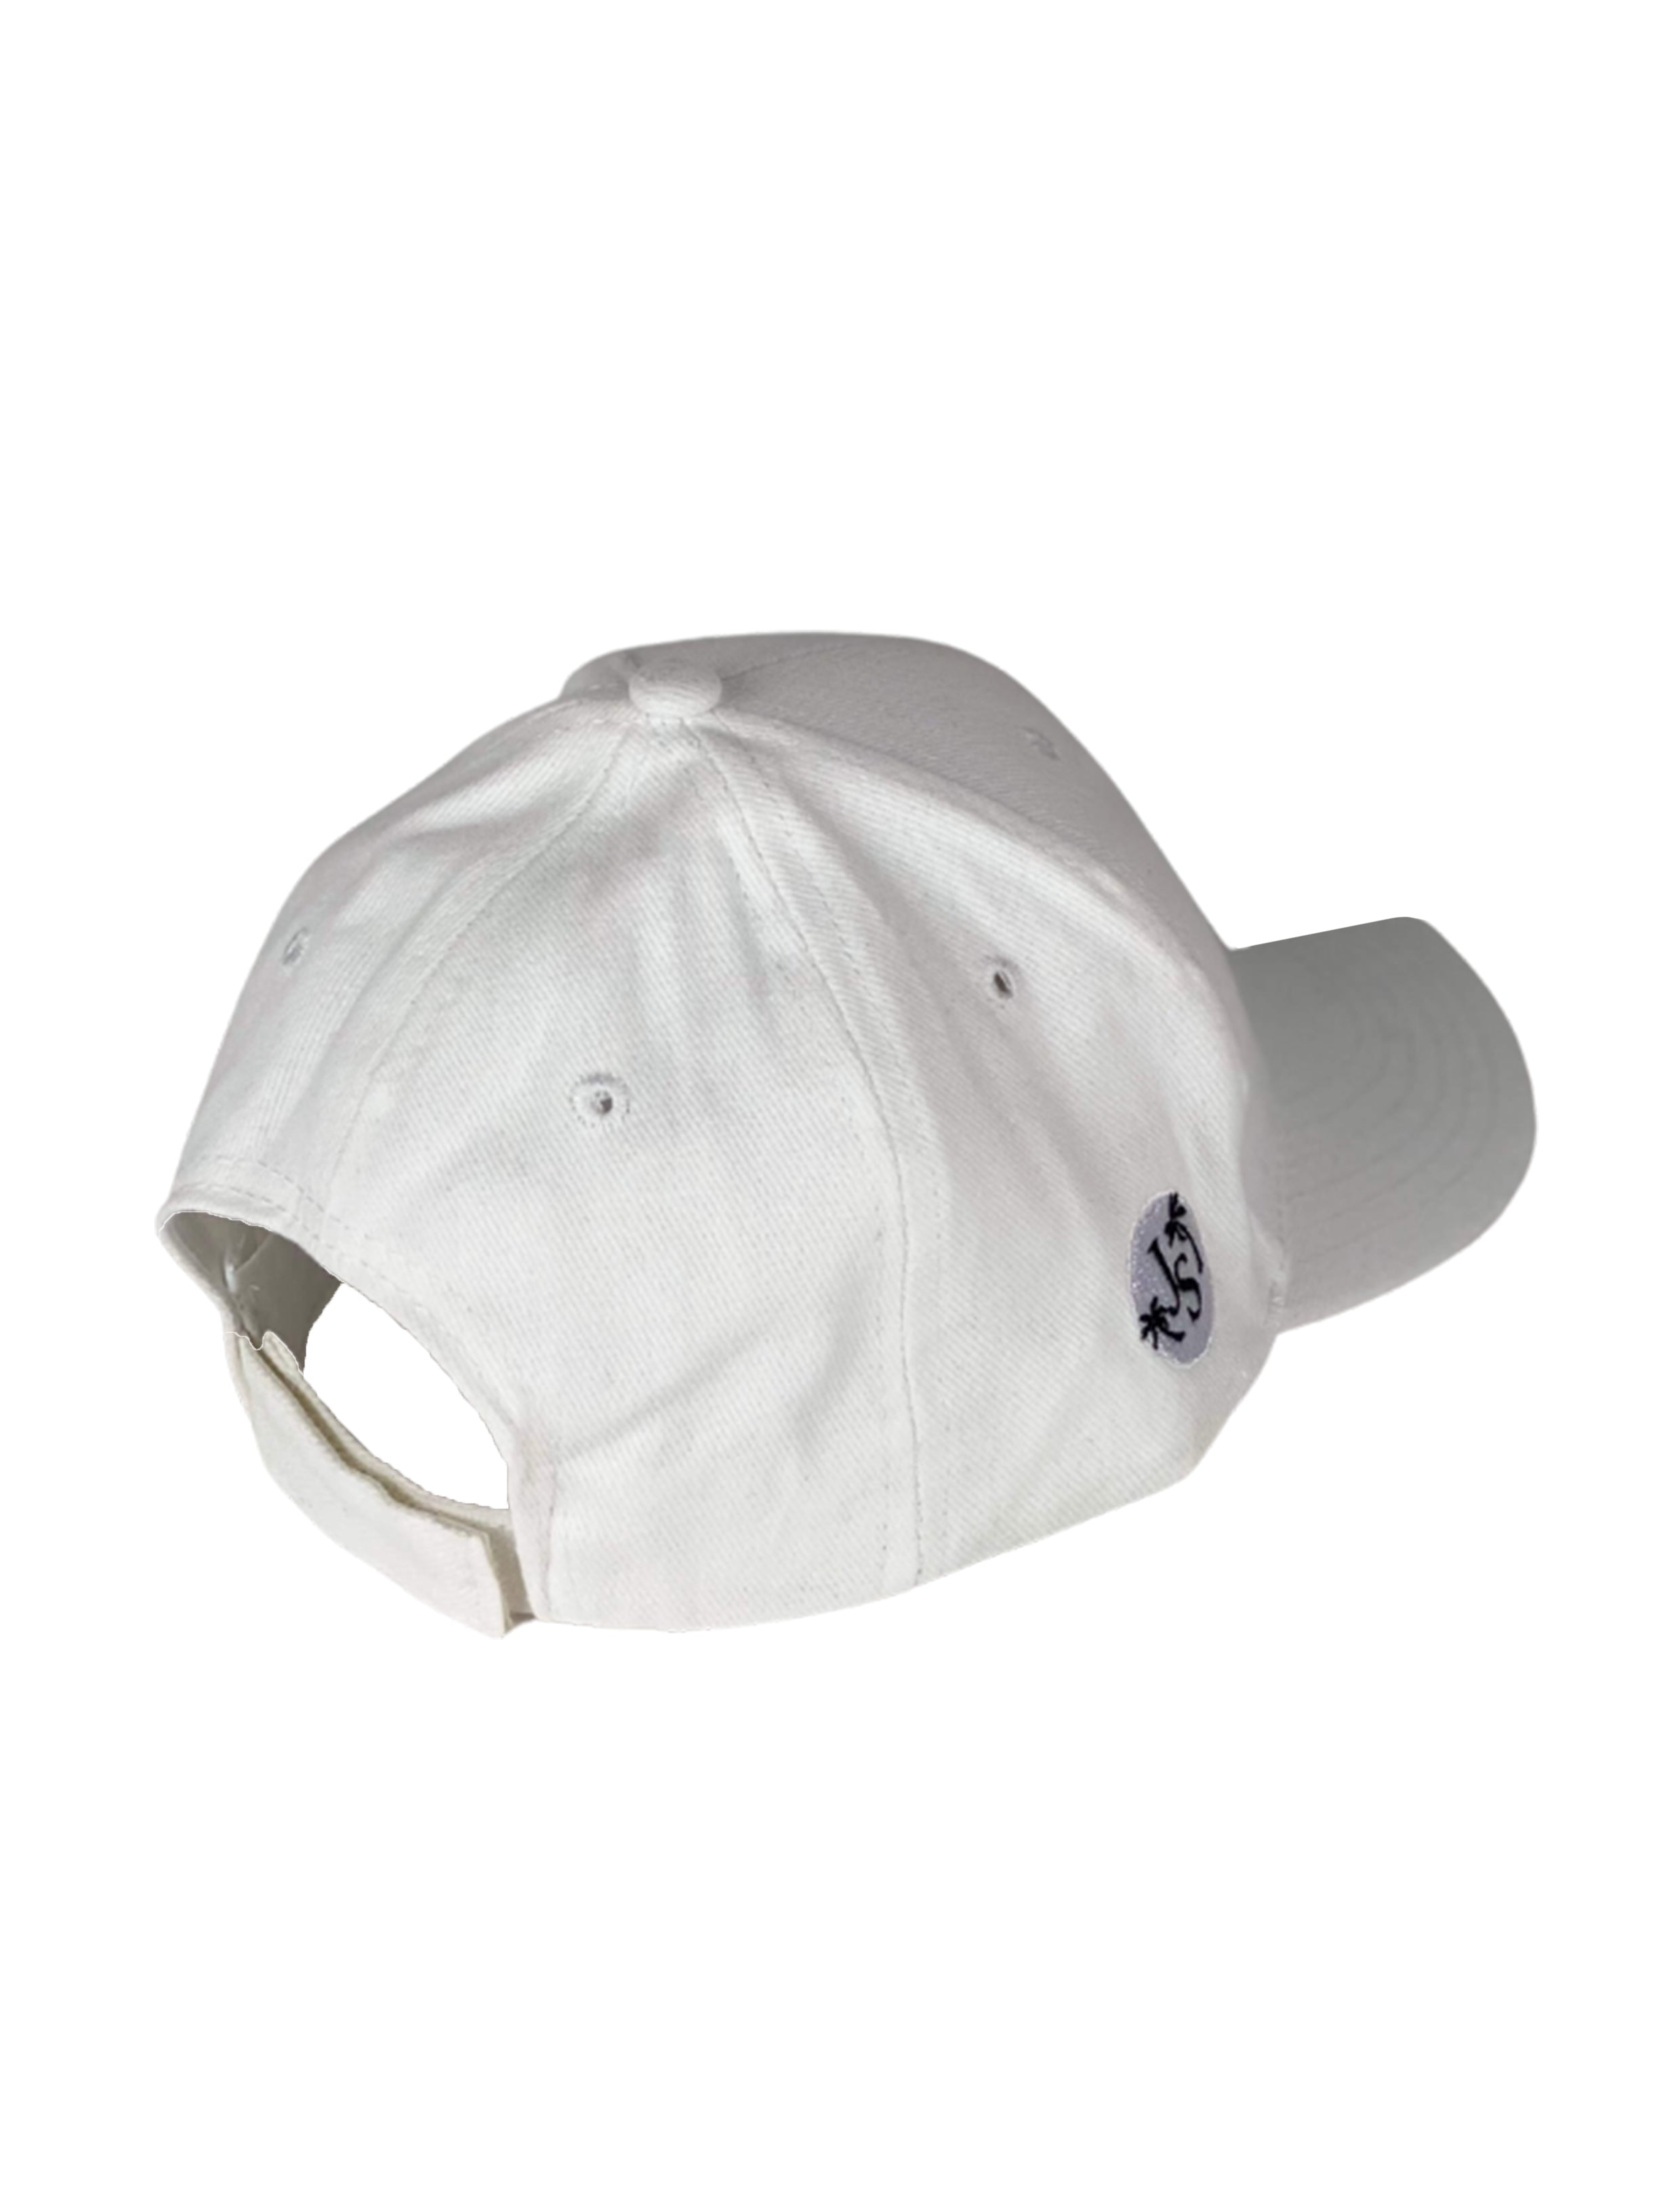 Jimmy Unisex Cotton Cap - White